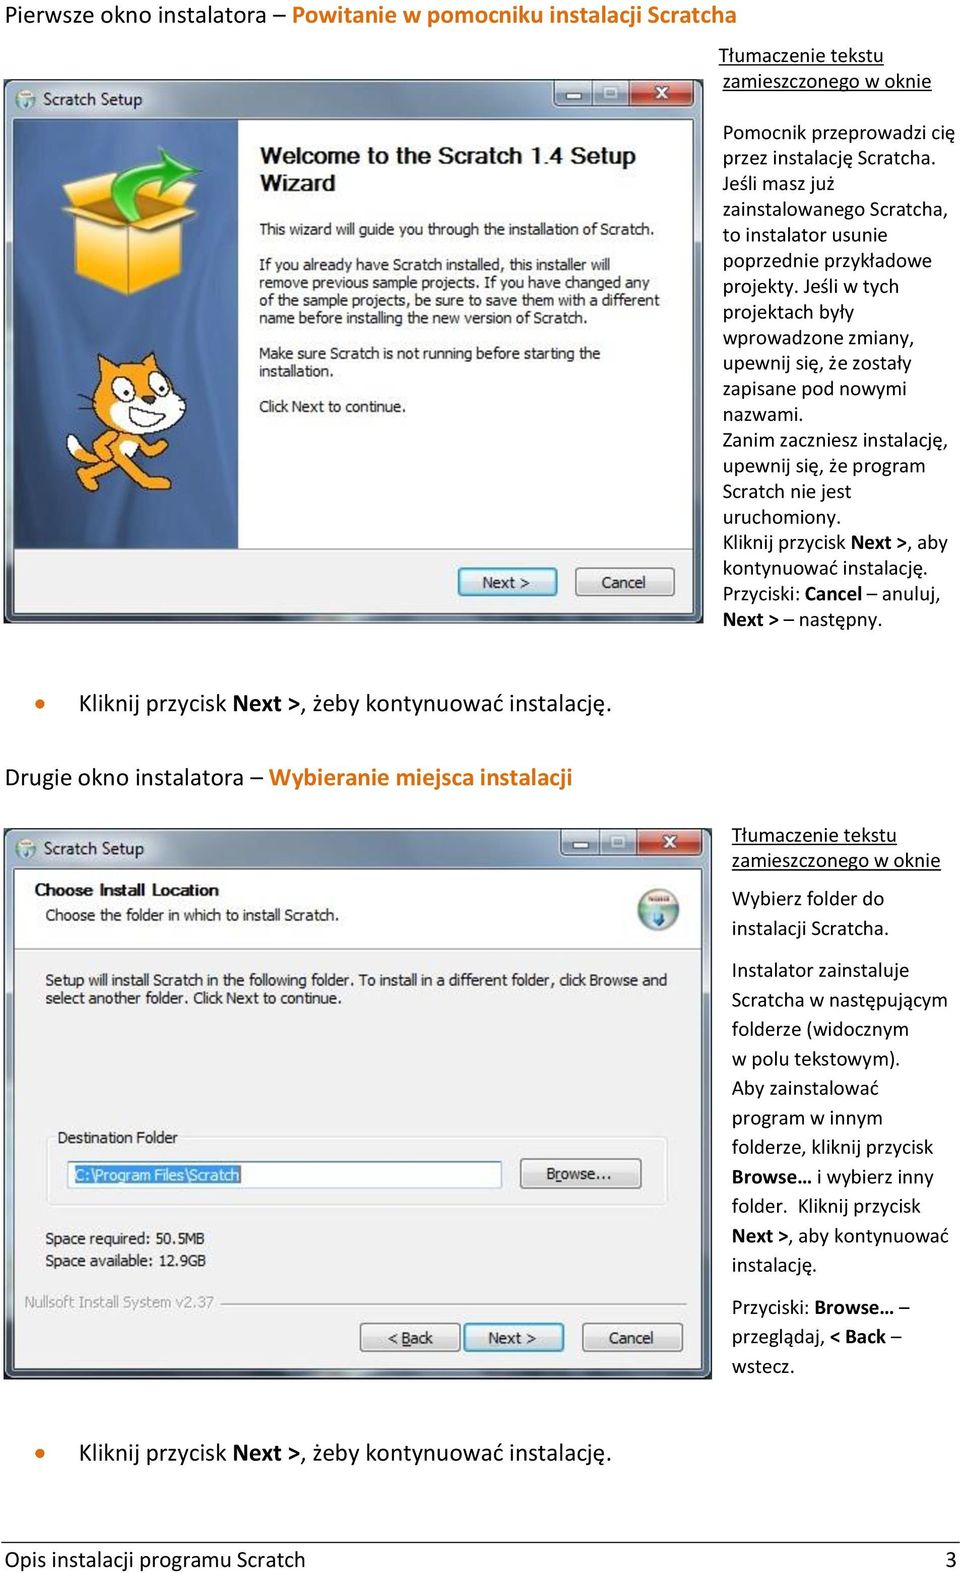 Zanim zaczniesz instalację, upewnij się, że program Scratch nie jest uruchomiony. Kliknij przycisk Next >, aby kontynuować instalację. Przyciski: Cancel anuluj, Next > następny.